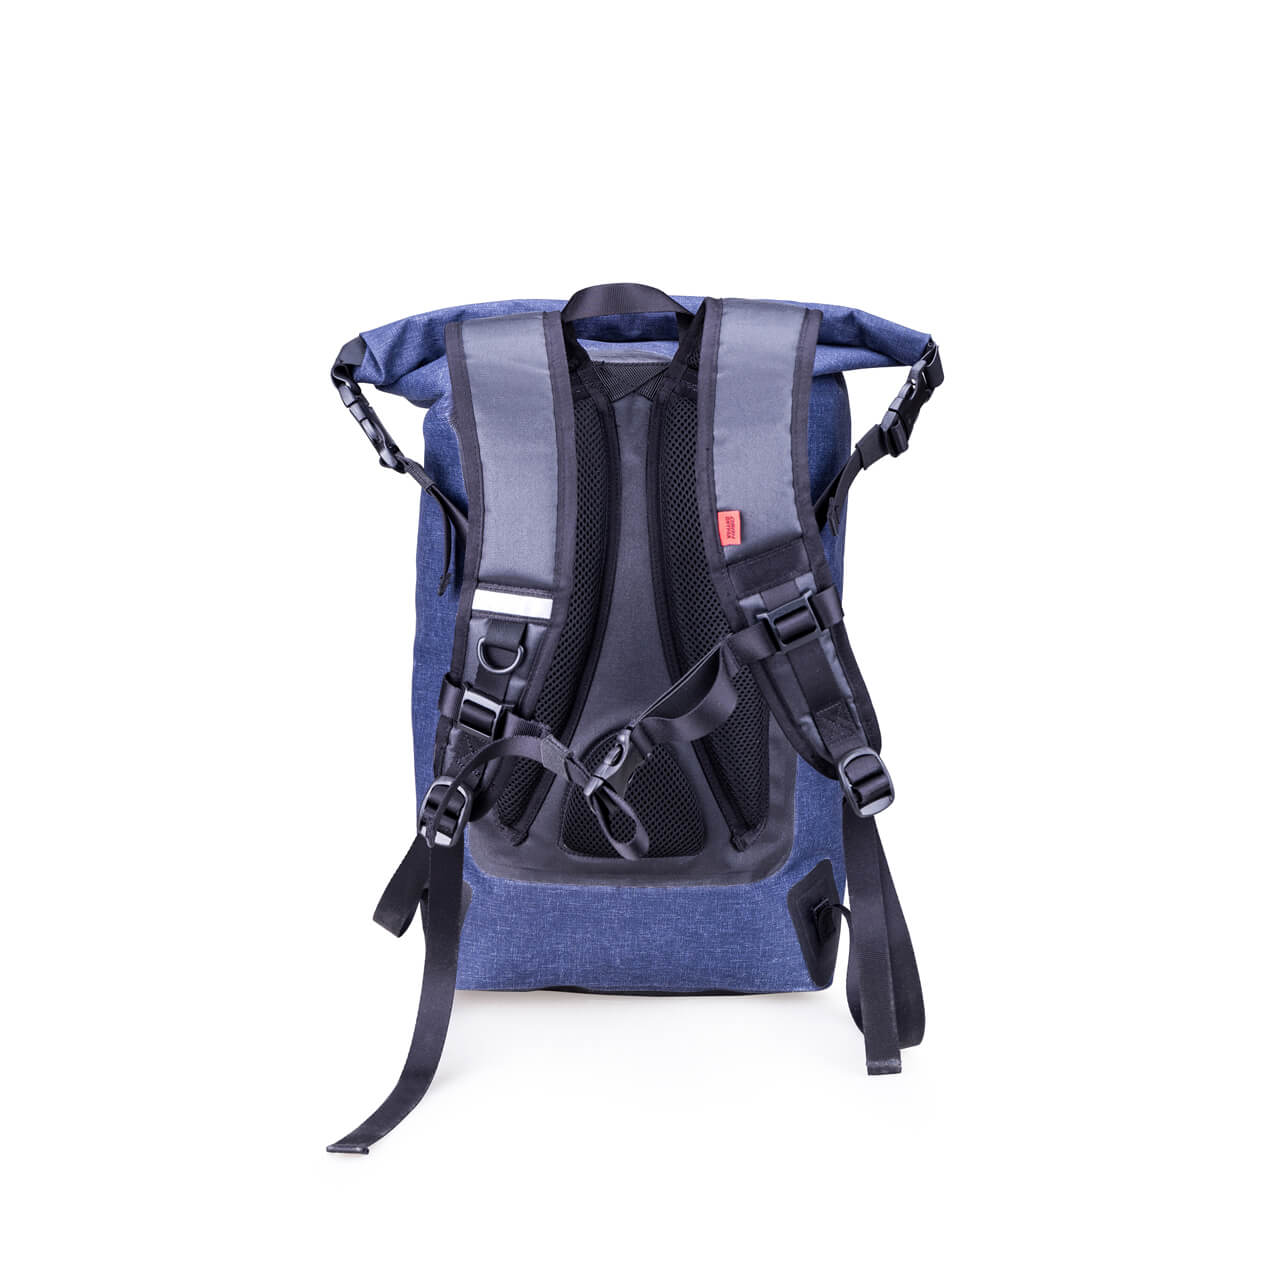 Waterproof Backpack 18L Roll-Top Closure Dry Bag | OSAH DRYPAK